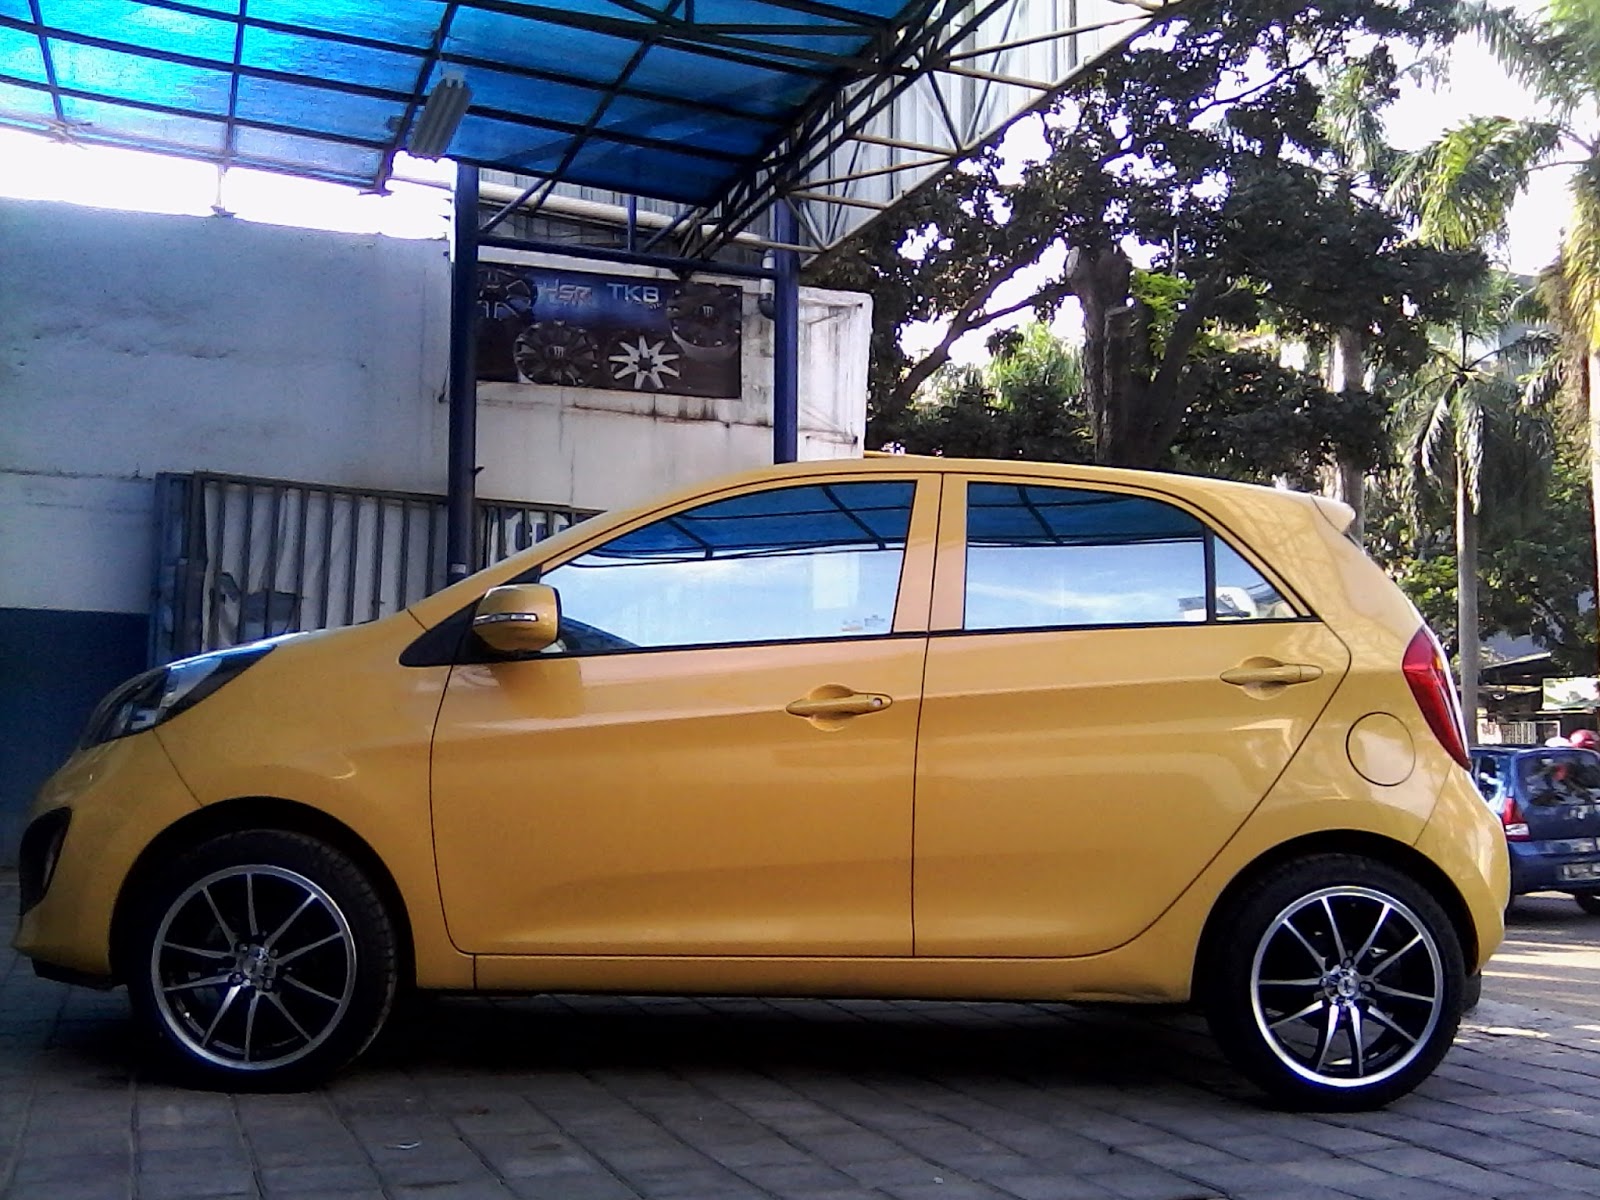 Foto Modifikasi Mobil Kia Picanto City Car Di Indonesia